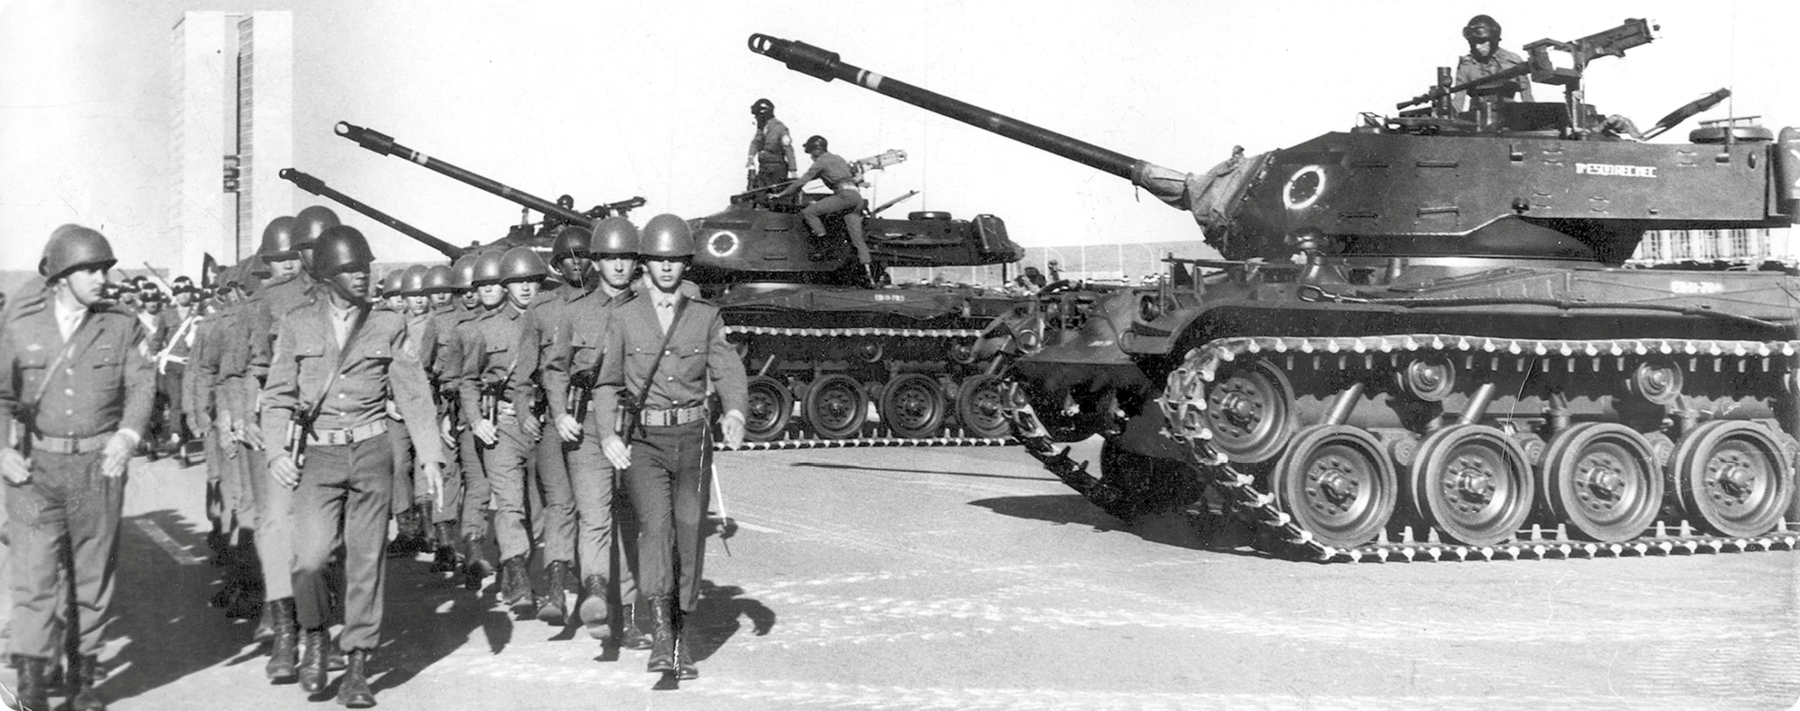 Fotografia em preto e branco. À esquerda, soldados em fileiras caminhando. À direita, tanques de guerra em uma rua.